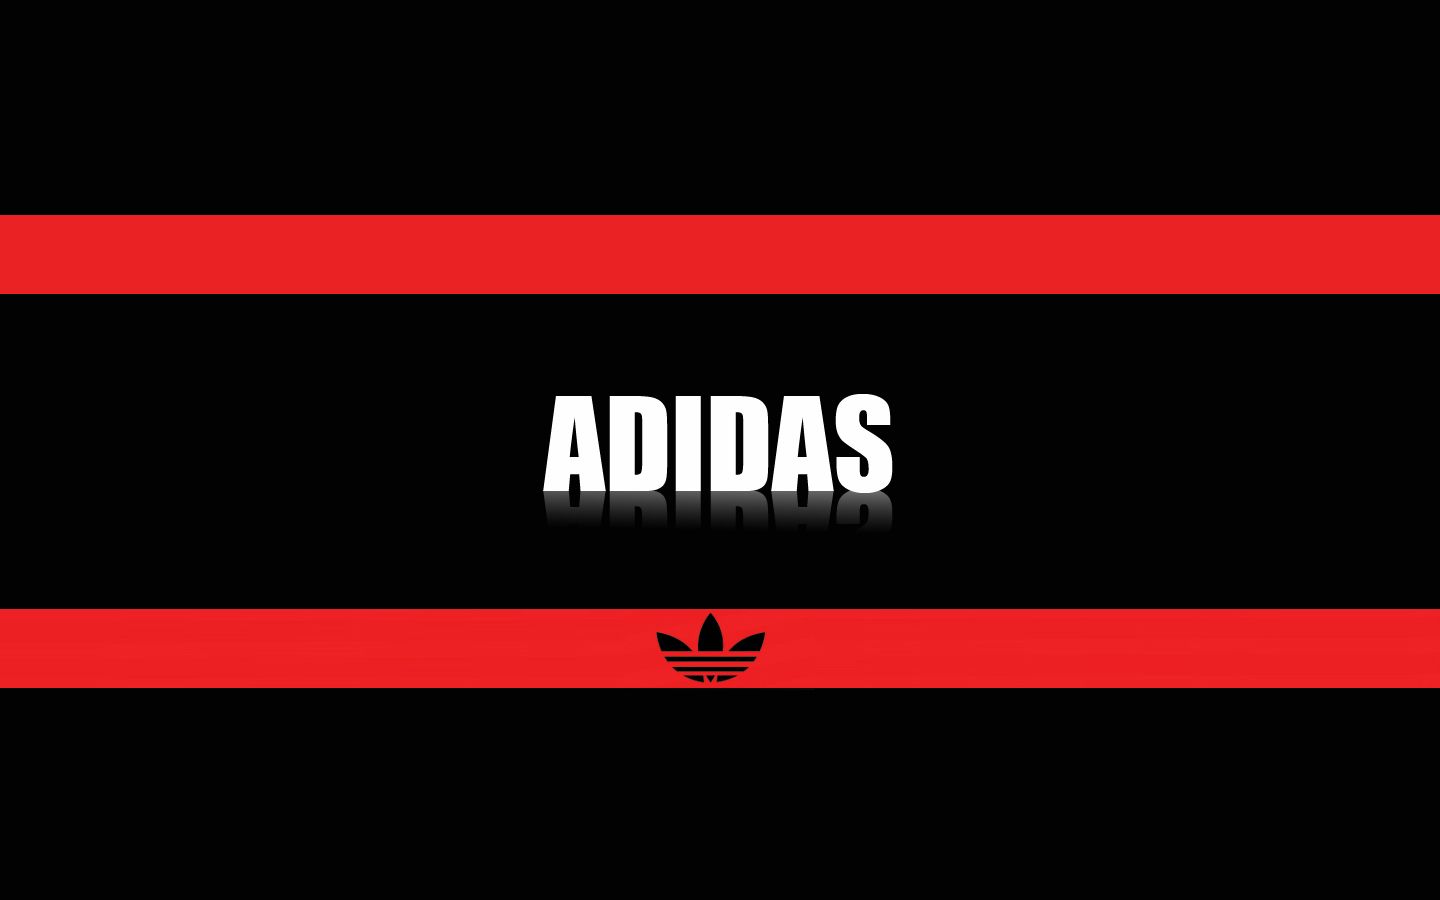 Adidas Wallpaper. Adidas. Adidas, Adidas logo, Logos